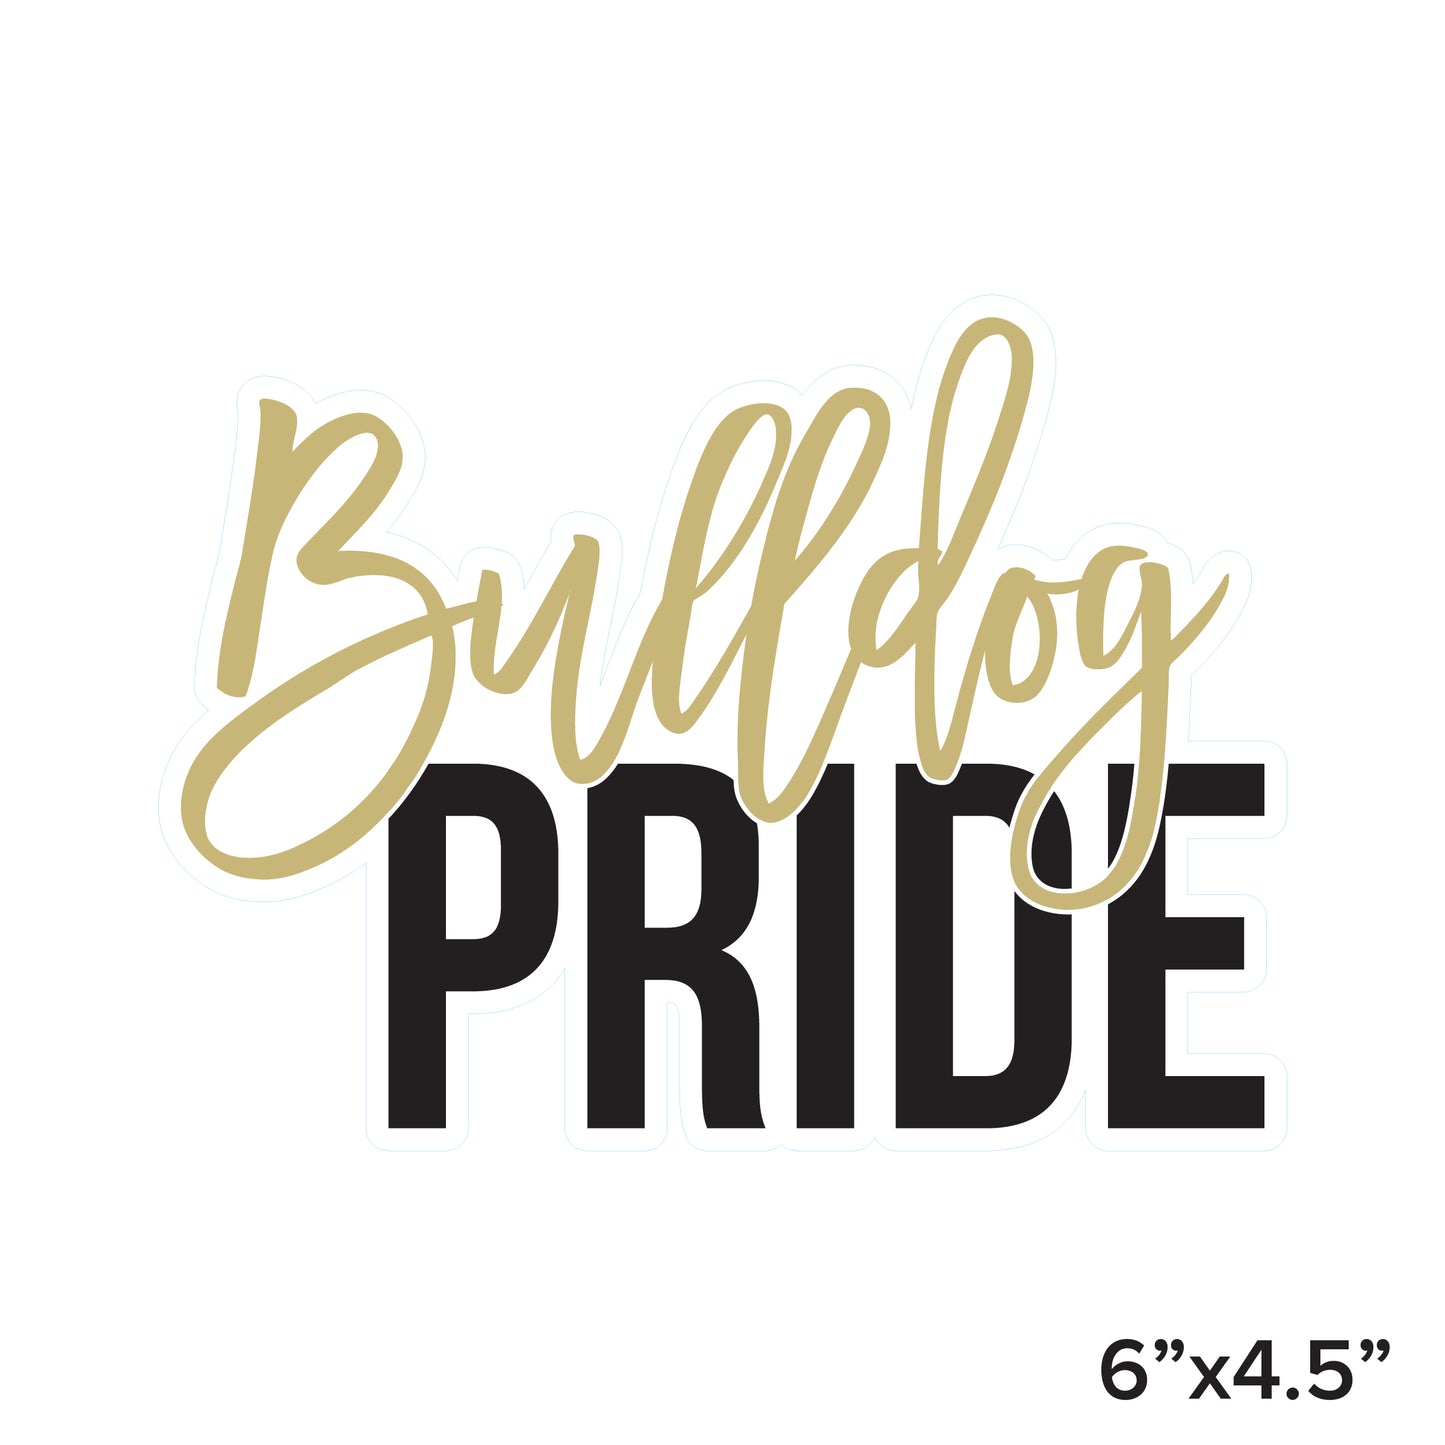 Bulldog Pride Sticker